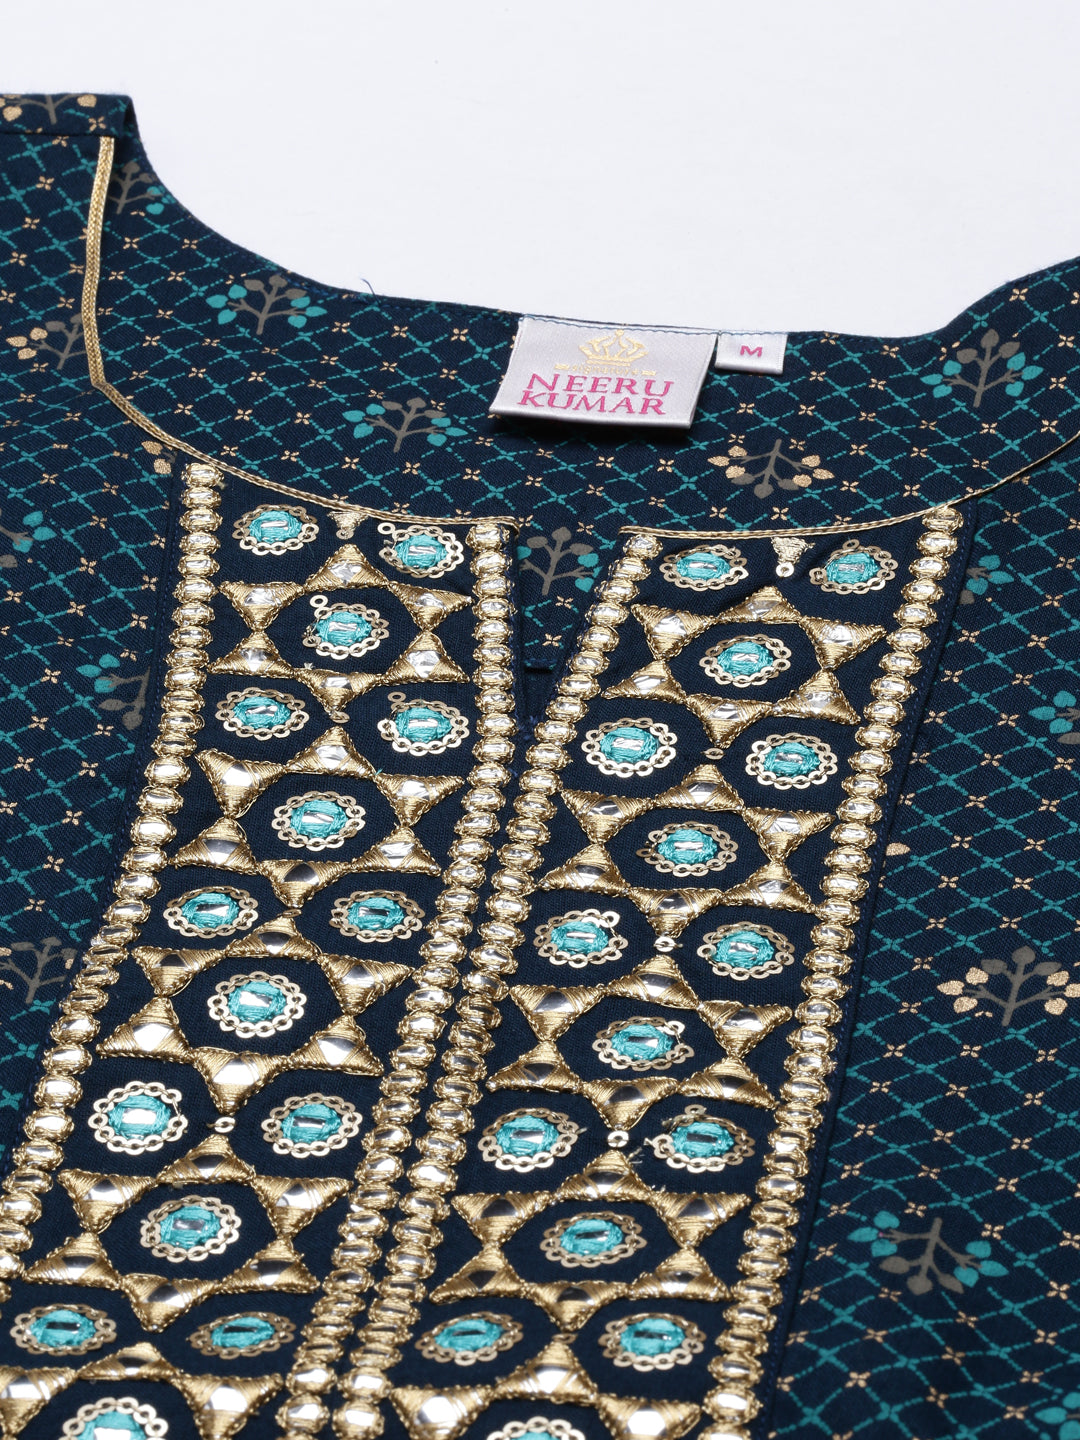 Neeru's Blue Color Slub Riyon Fabric Tunic